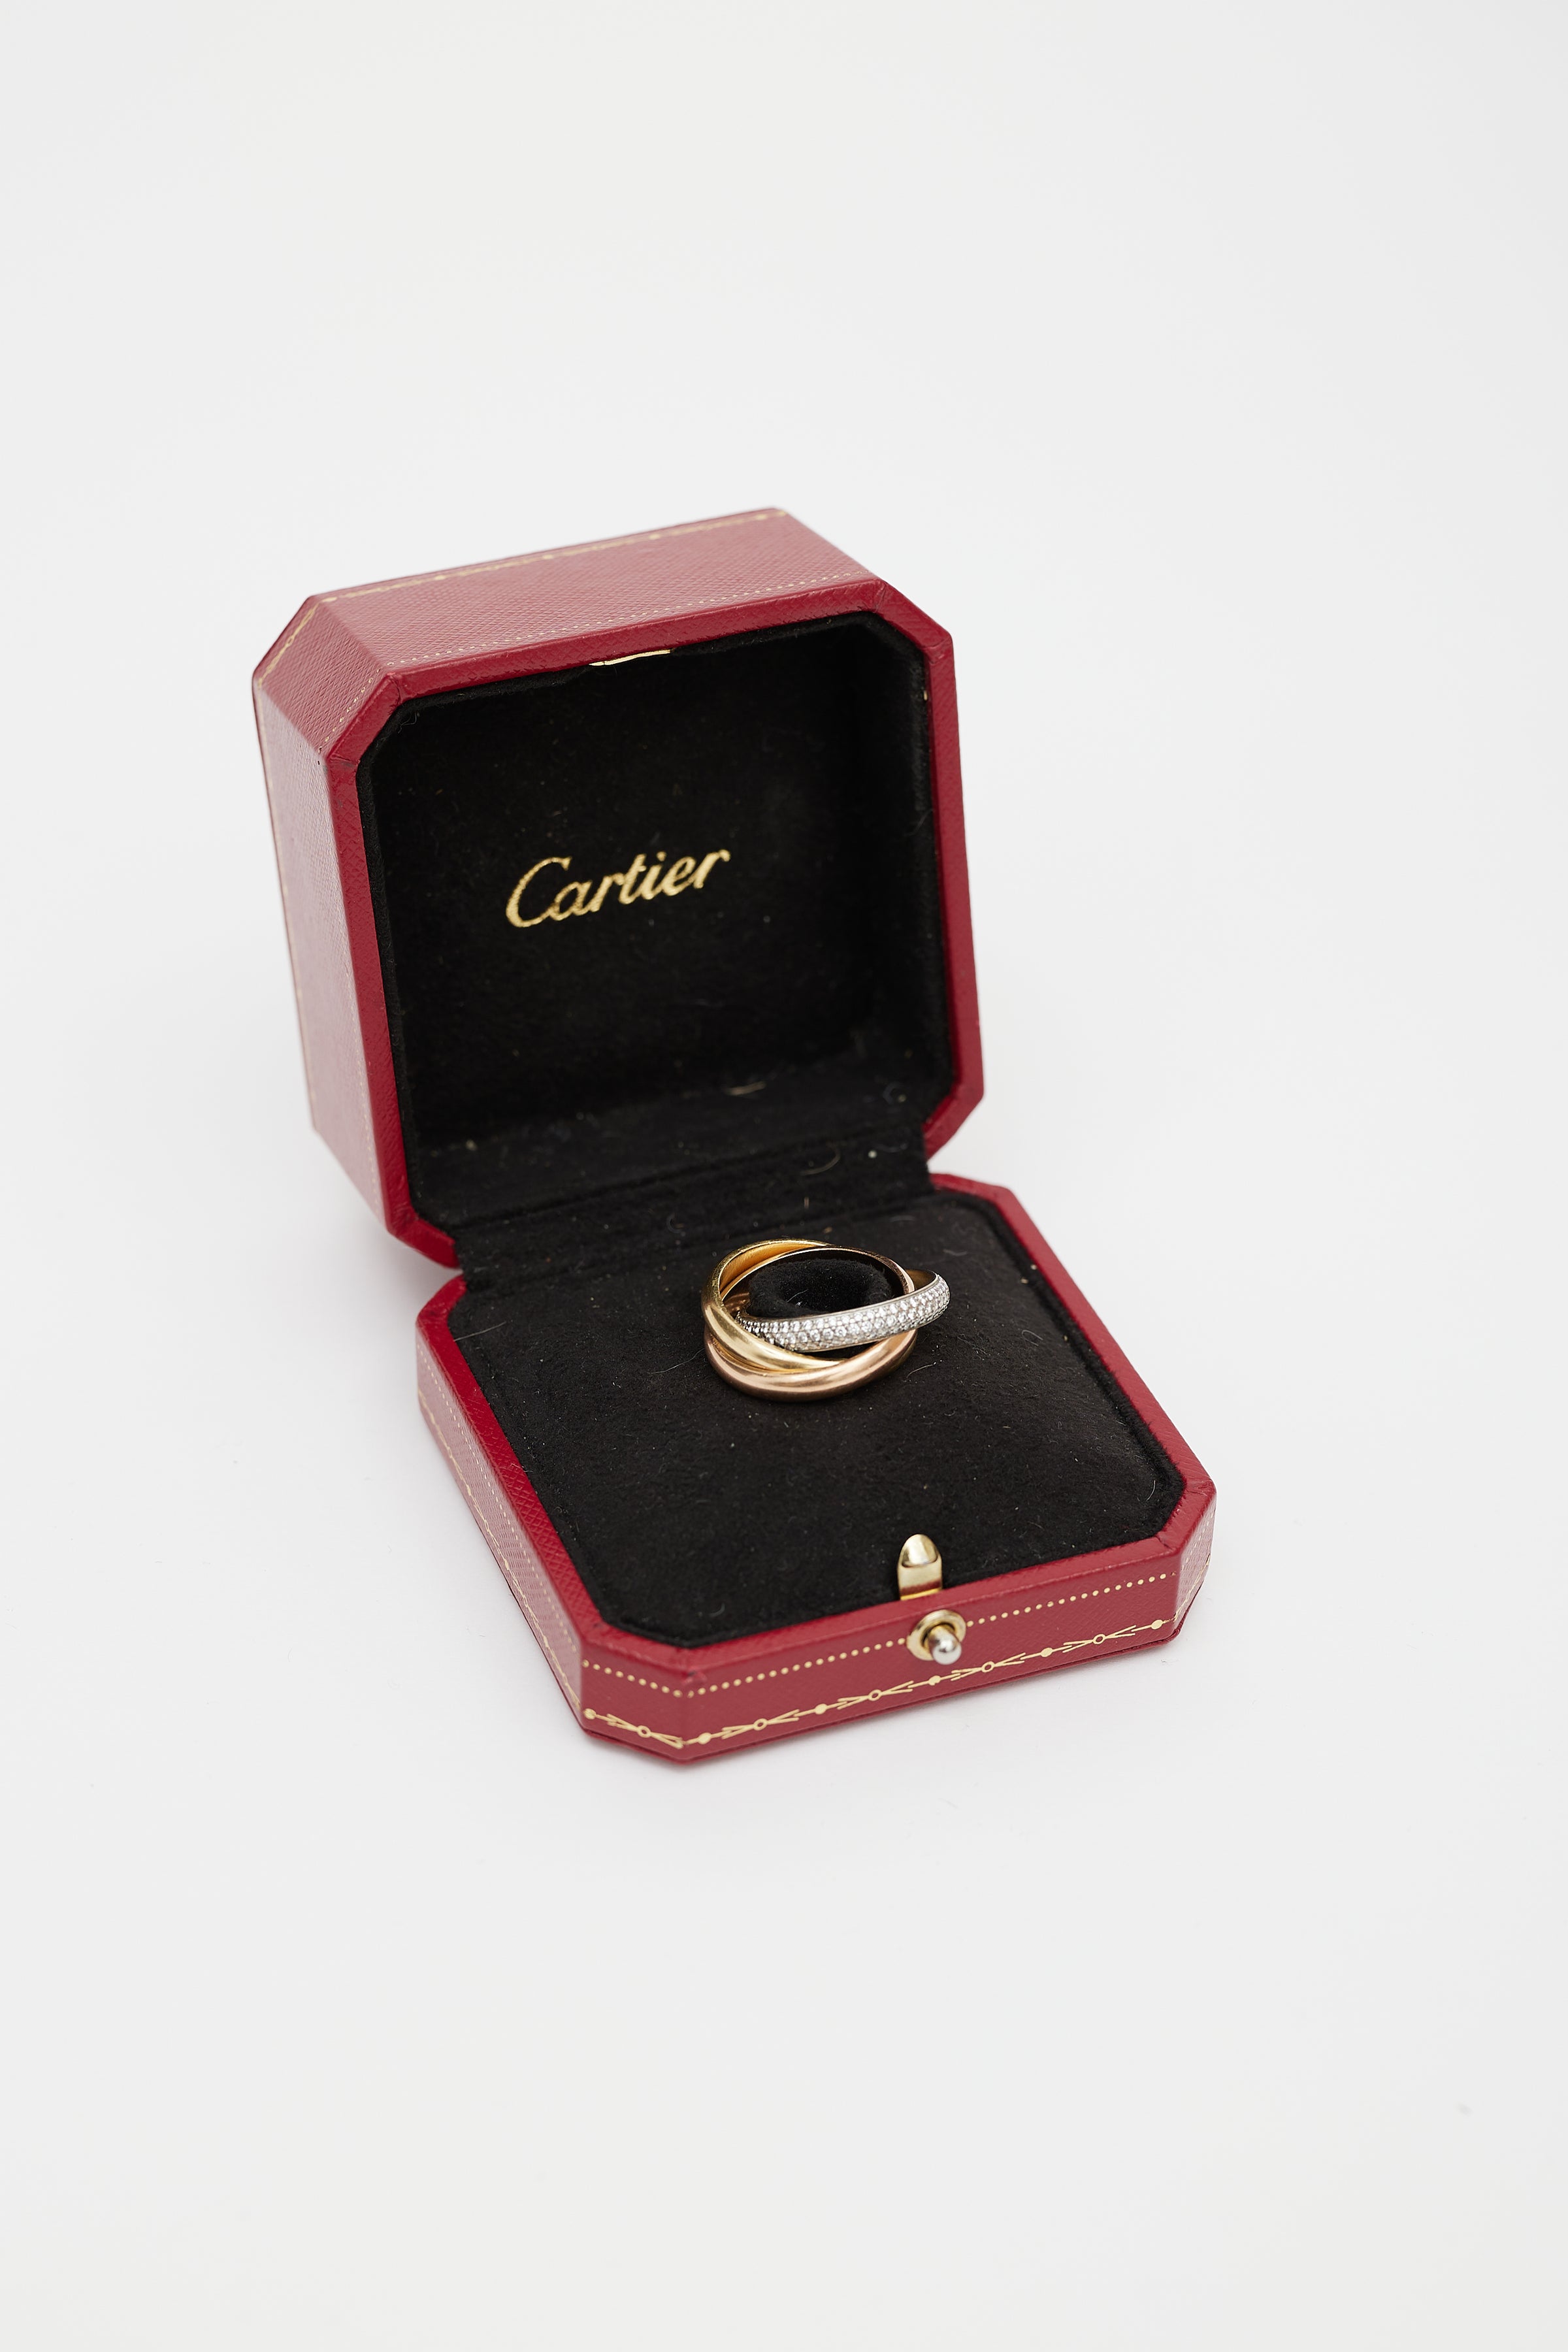 Cartier Trinity De Cartier 18 Karat Diamond White Gold and Ceramic Ring  –V20346 | vividdiamonds